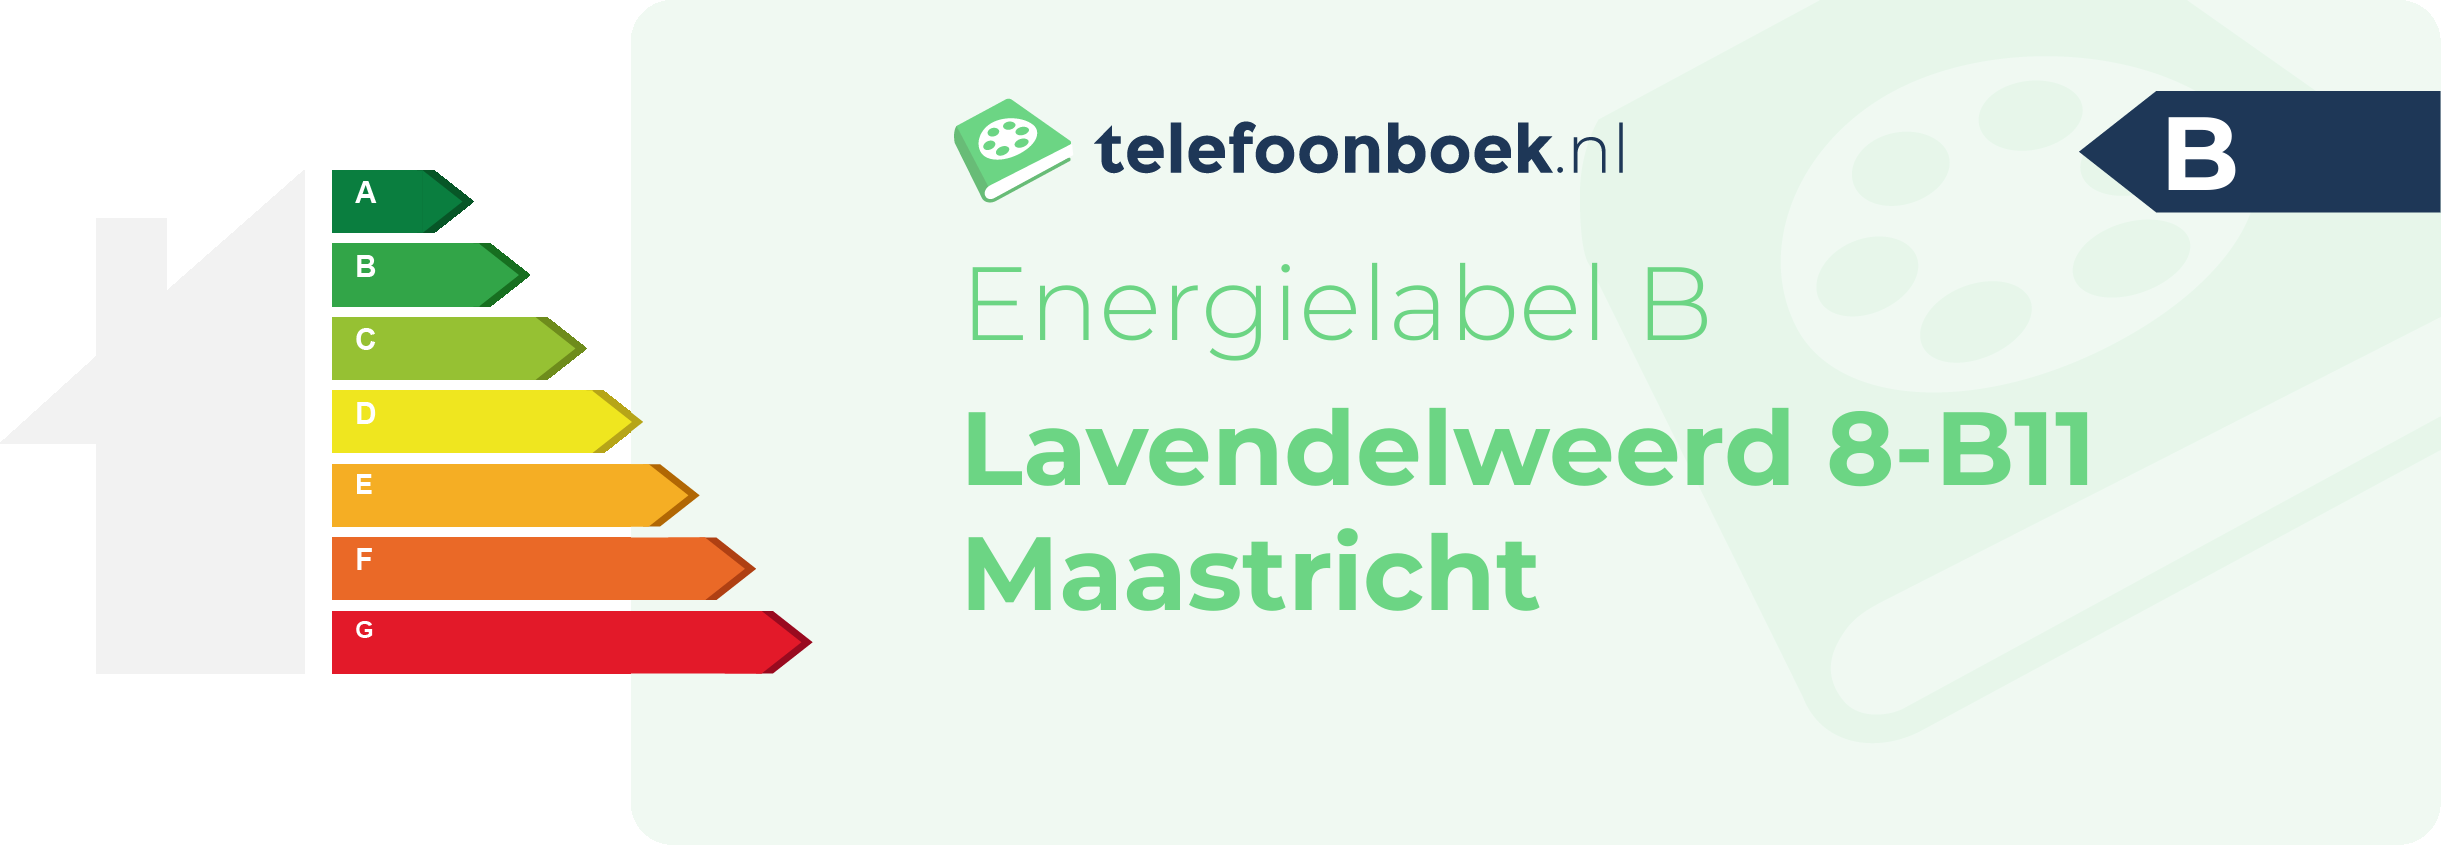 Energielabel Lavendelweerd 8-B11 Maastricht